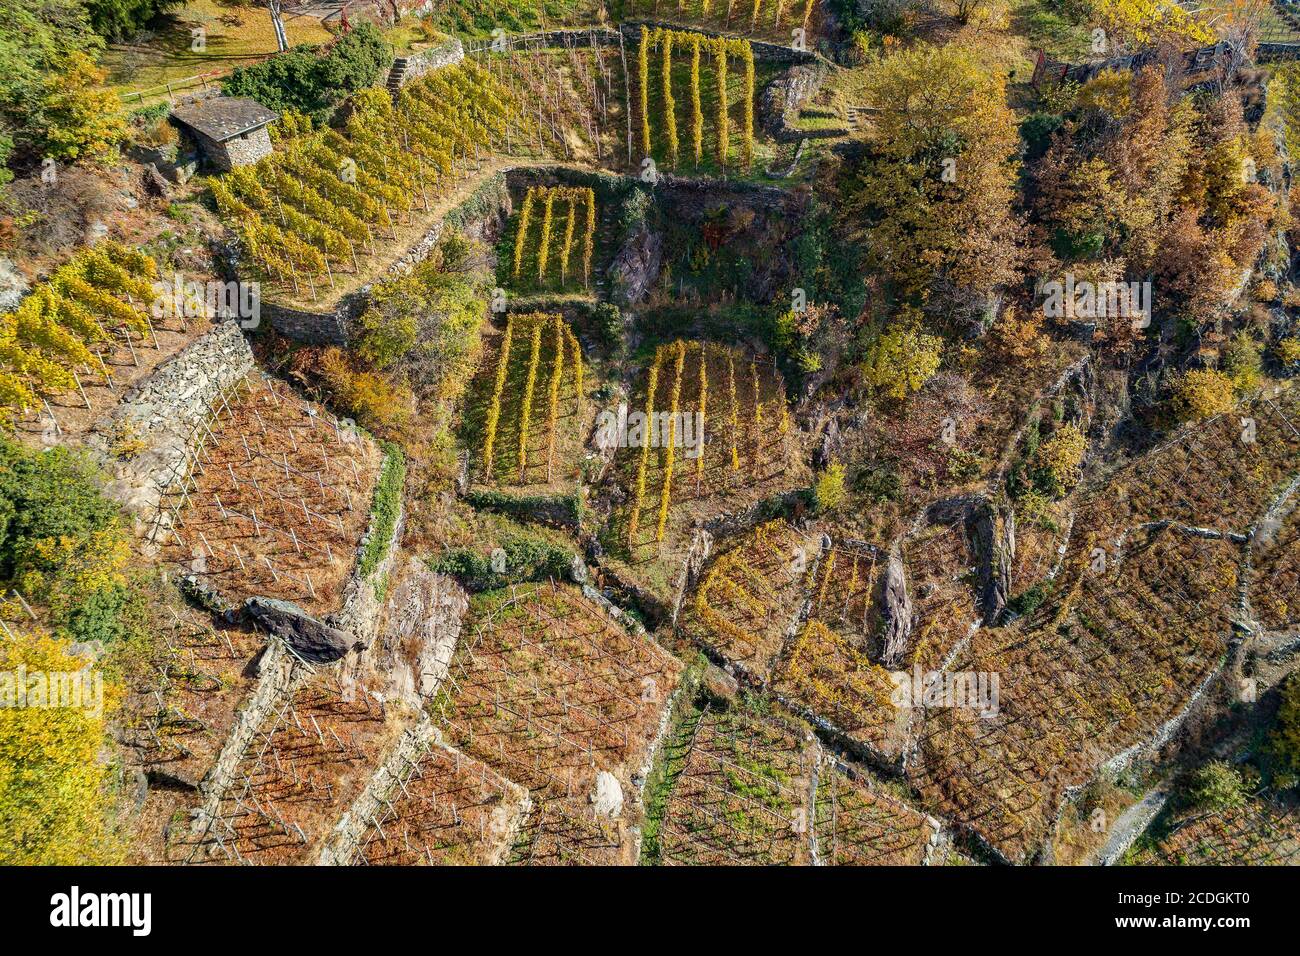 Valtellina (IT) - vignobles en automne Banque D'Images